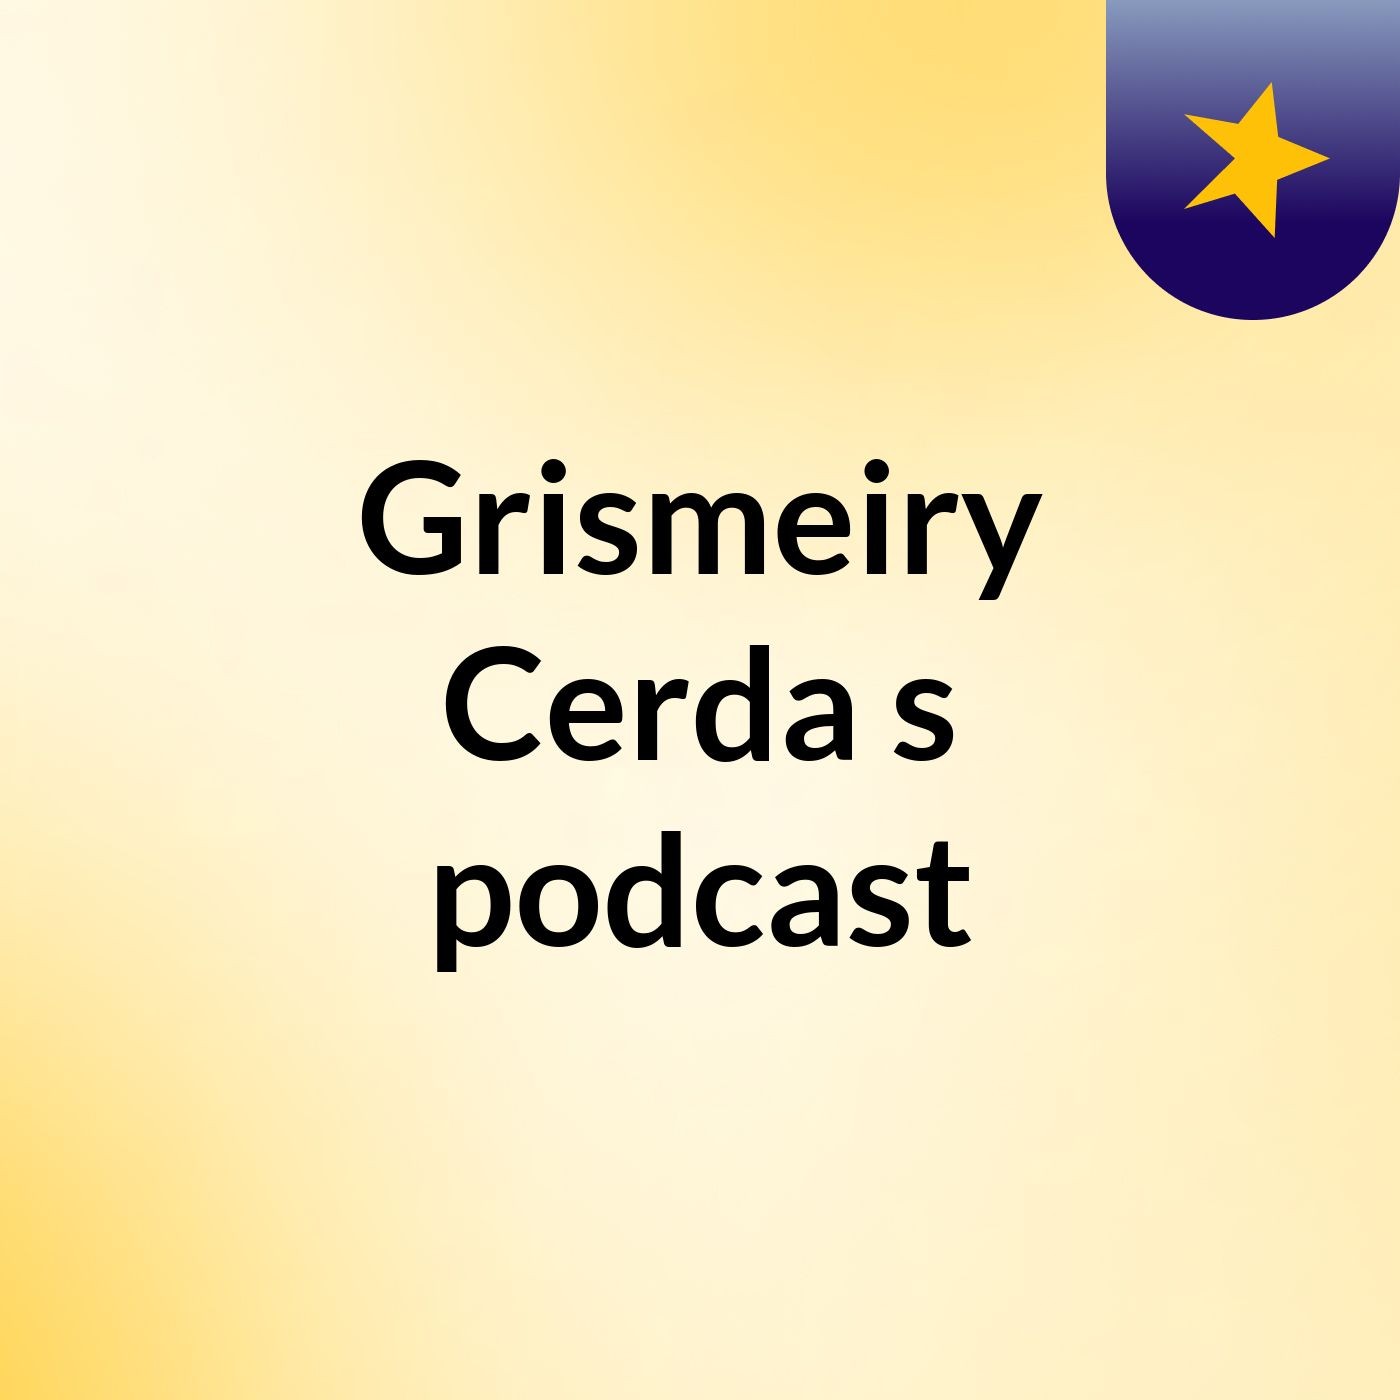 Grismeiry Cerda's podcast